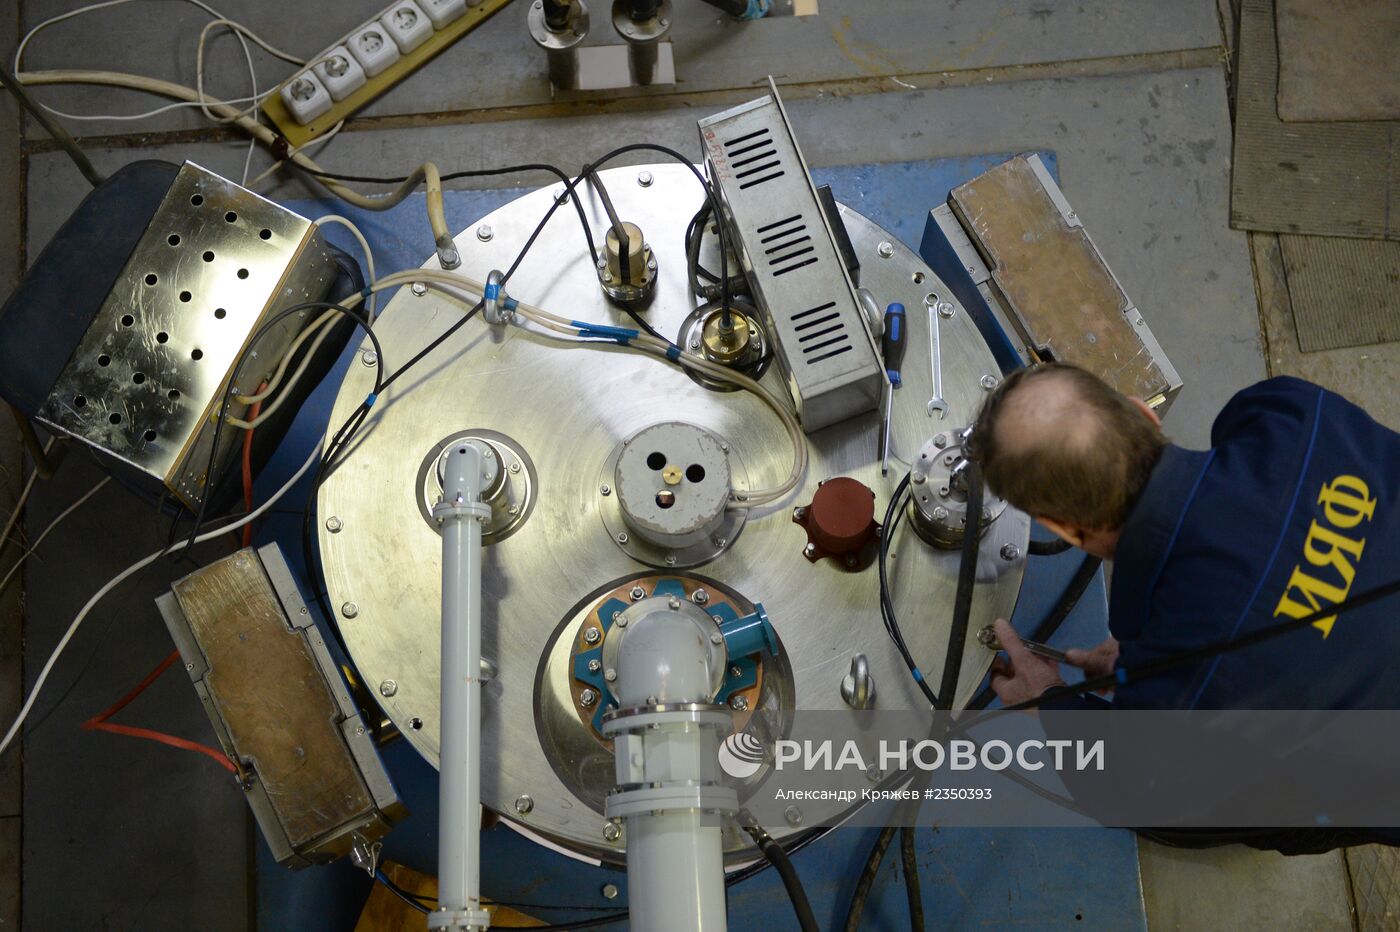 Коллайдеры в институте ядерной физики в Новосибирске